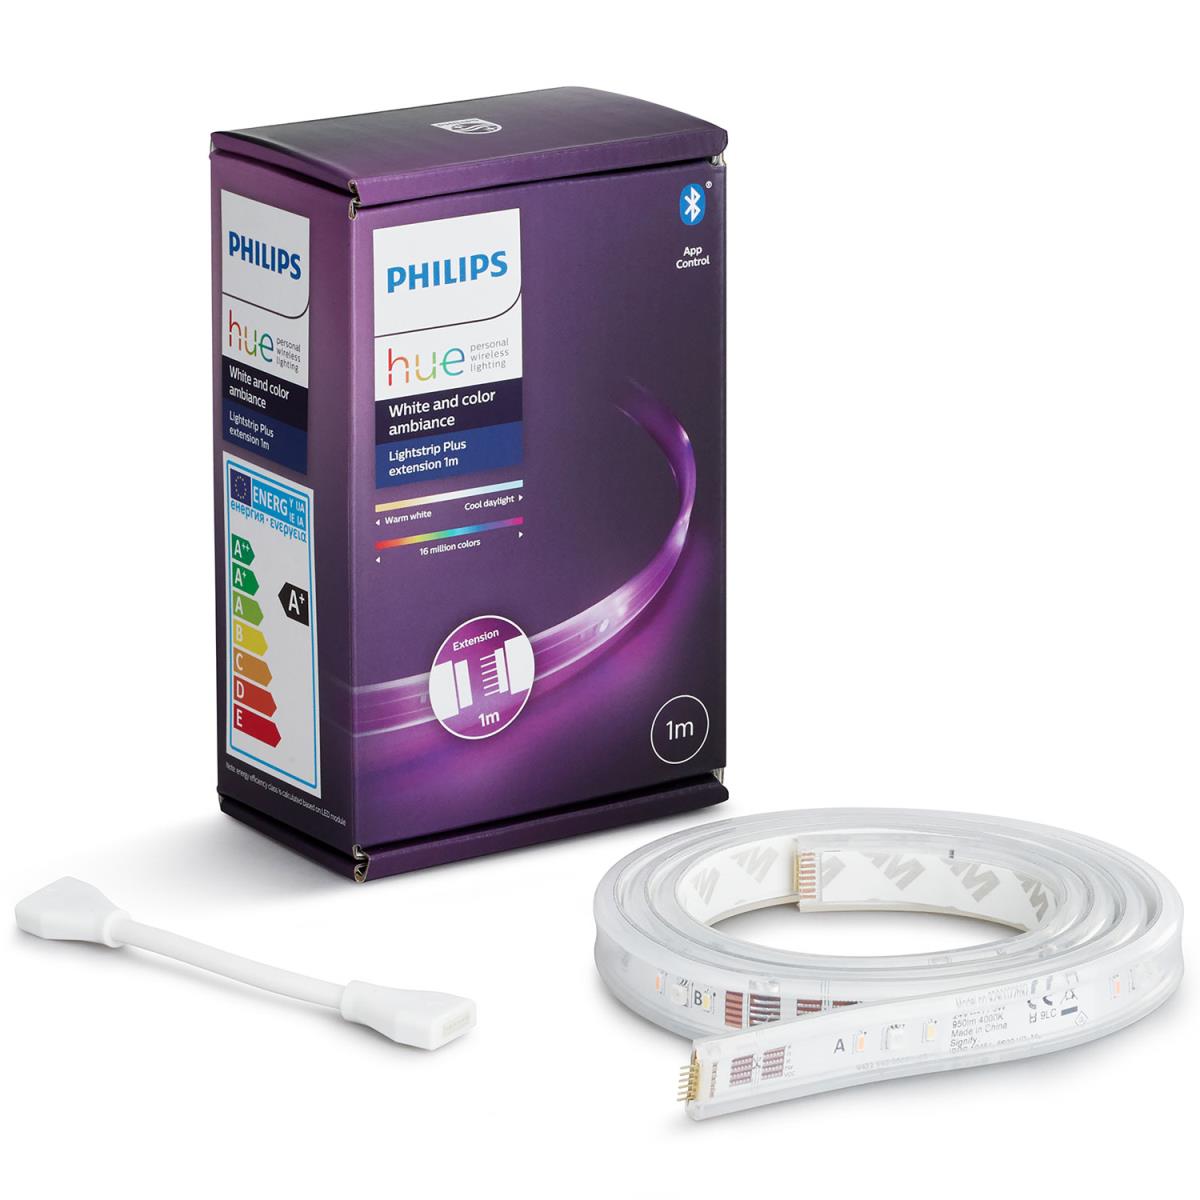 Philips: Hue Lightstrip Plus V4 1m extension